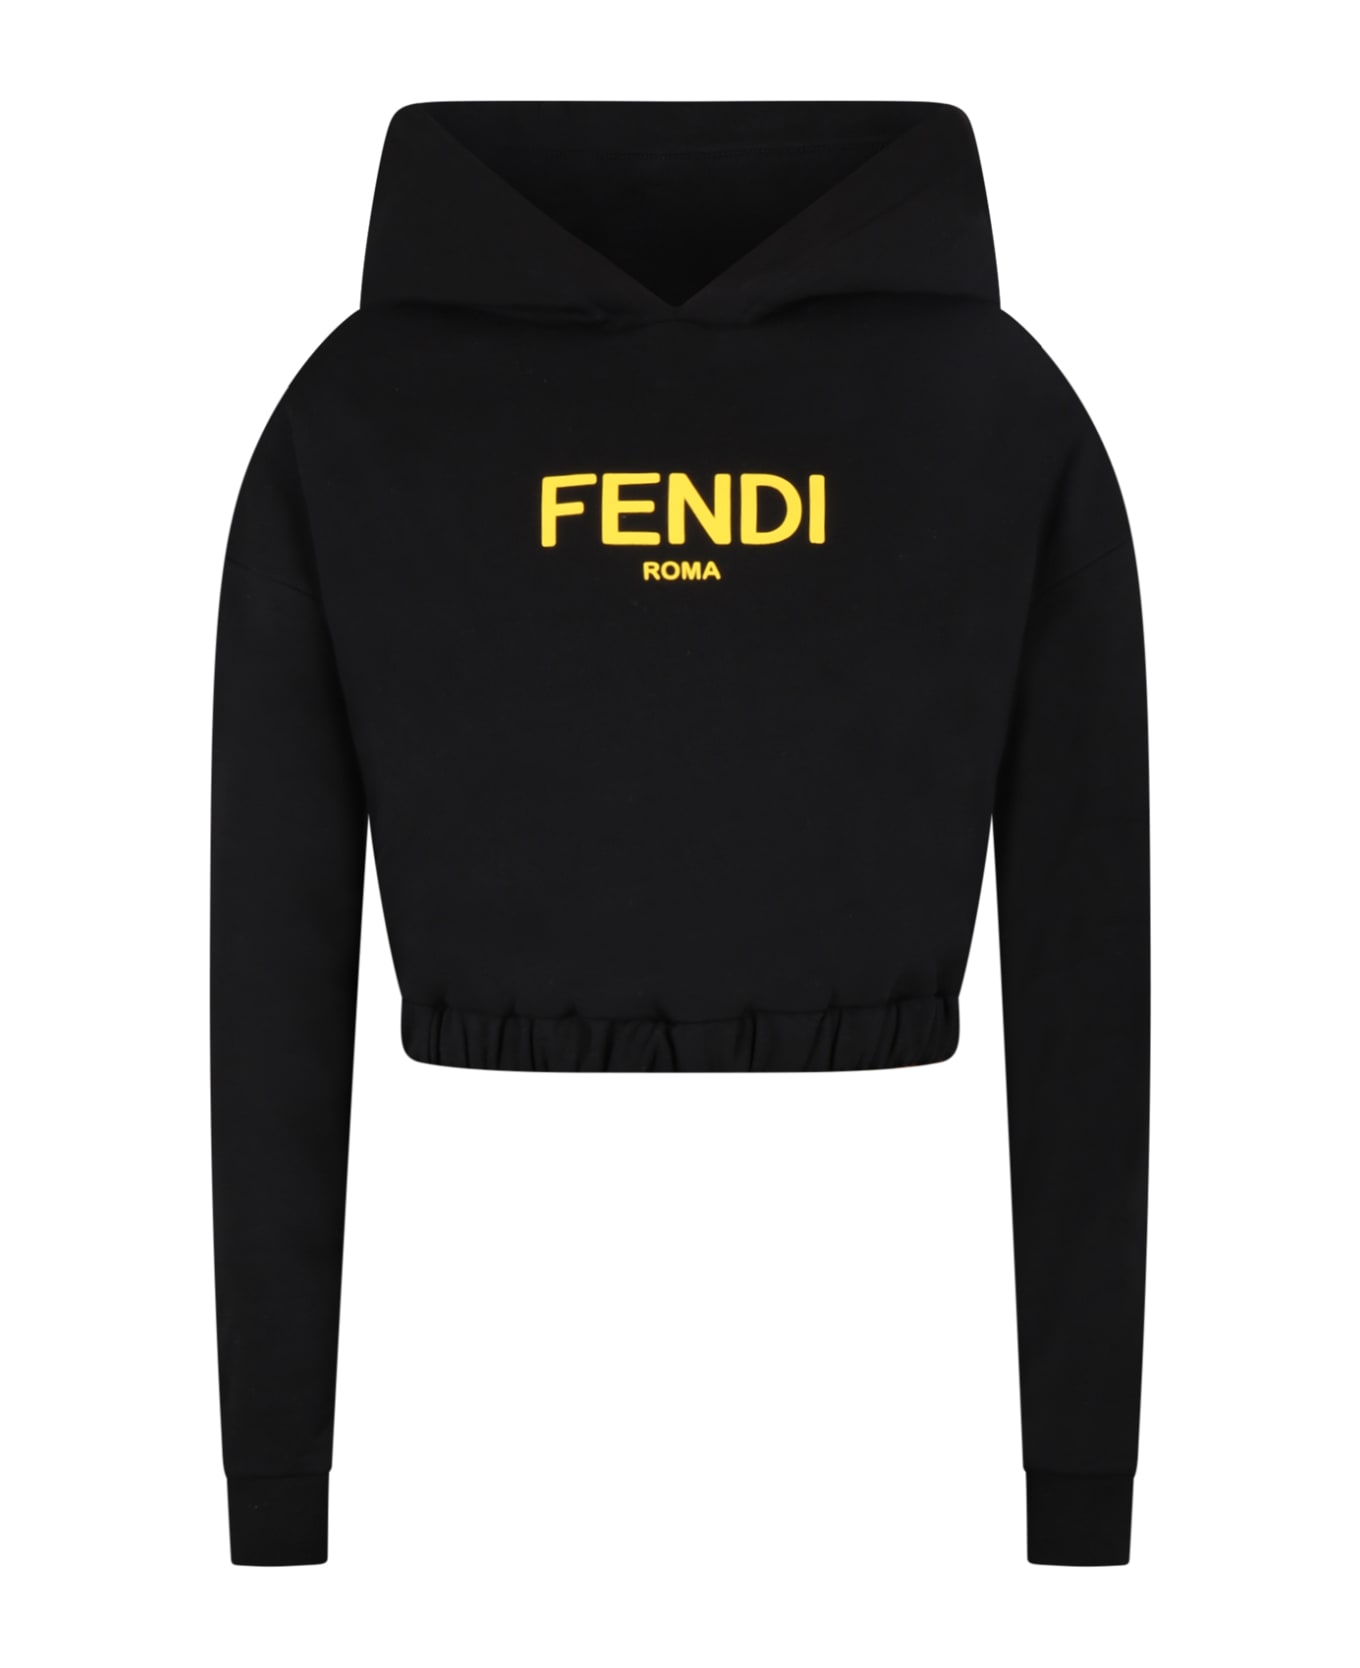 Fendi Black Sweatshirt For Girl With Yellow Logo - Nero